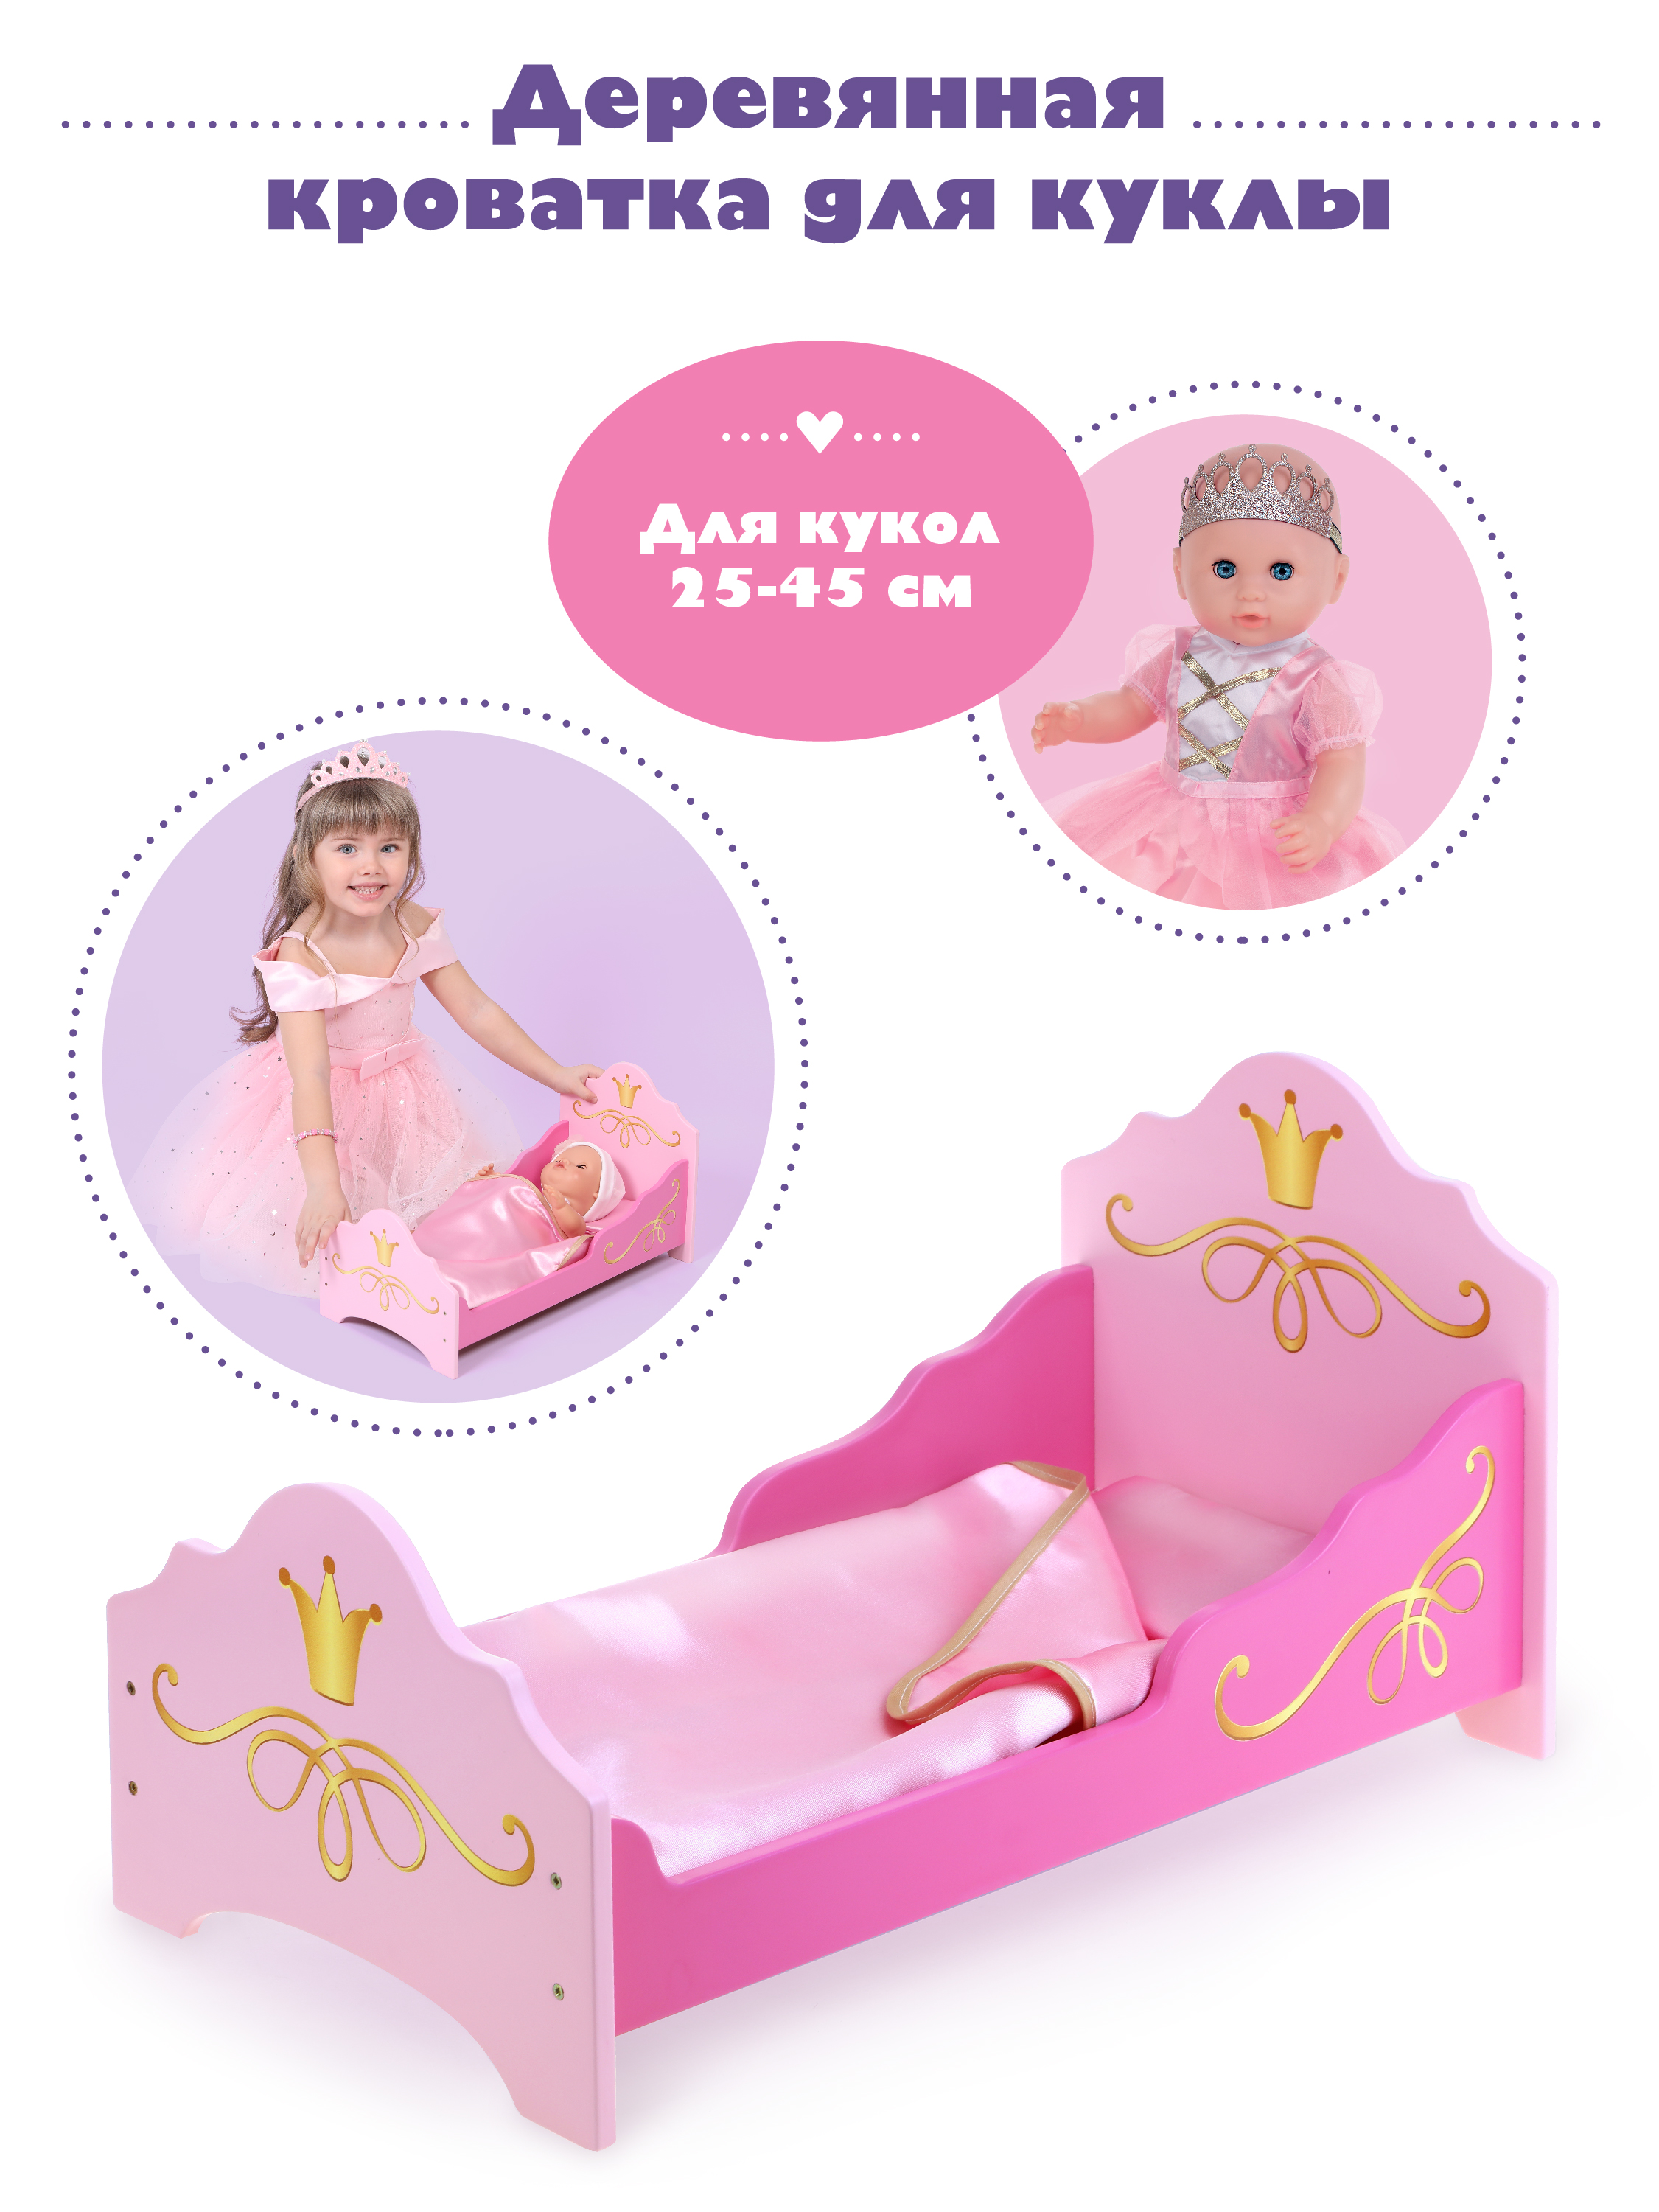 Кроватка для куклы Mary Poppins Принцесса 67398 одежда для куклы пупса 38 43 см комплект из кофточки комбинезона и шапочки дино